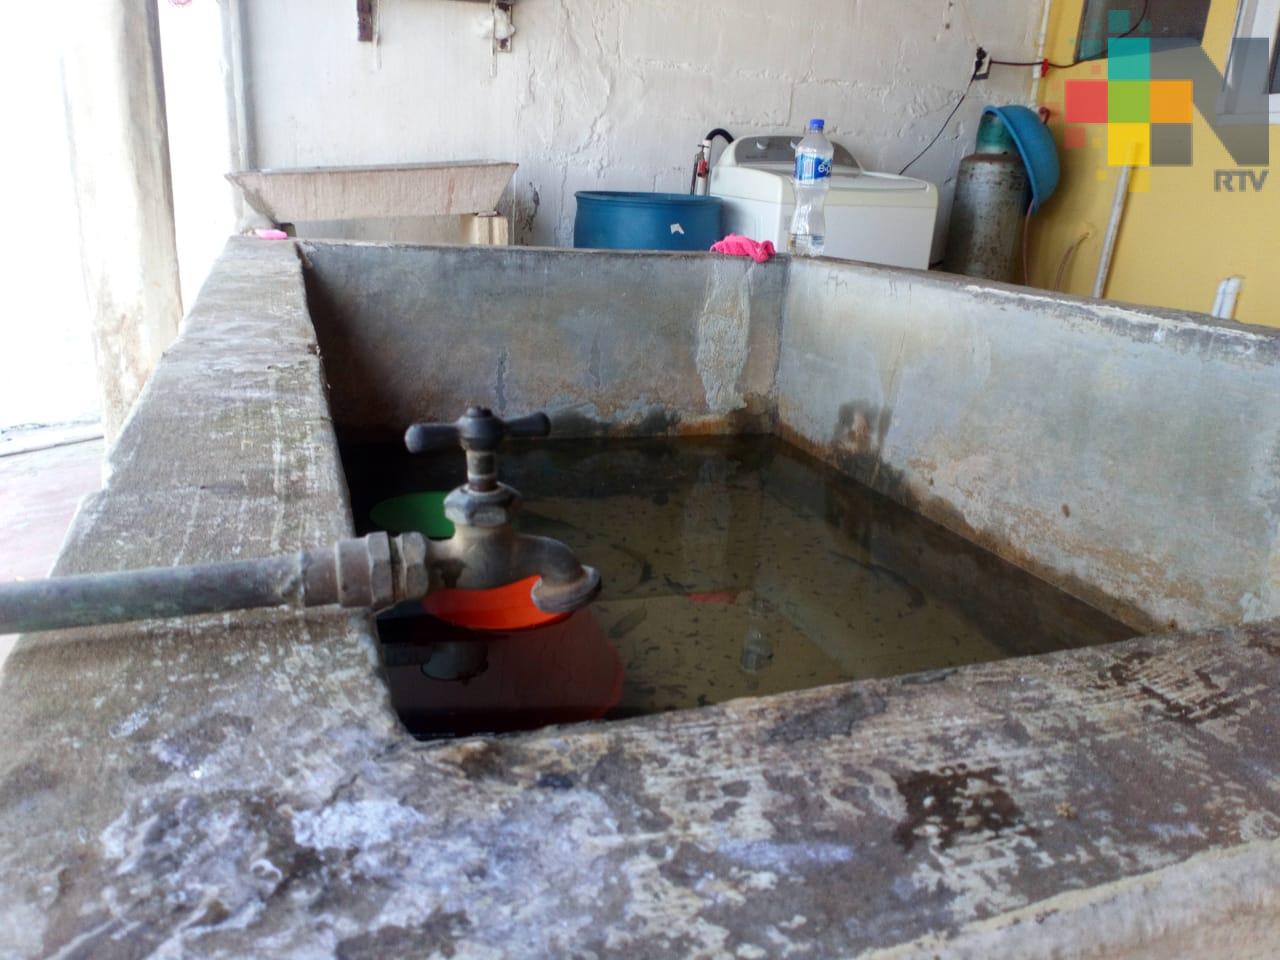 Desde hace 5 días carecen de agua potable en colonia Benito Juárez de Coatzacoalcos